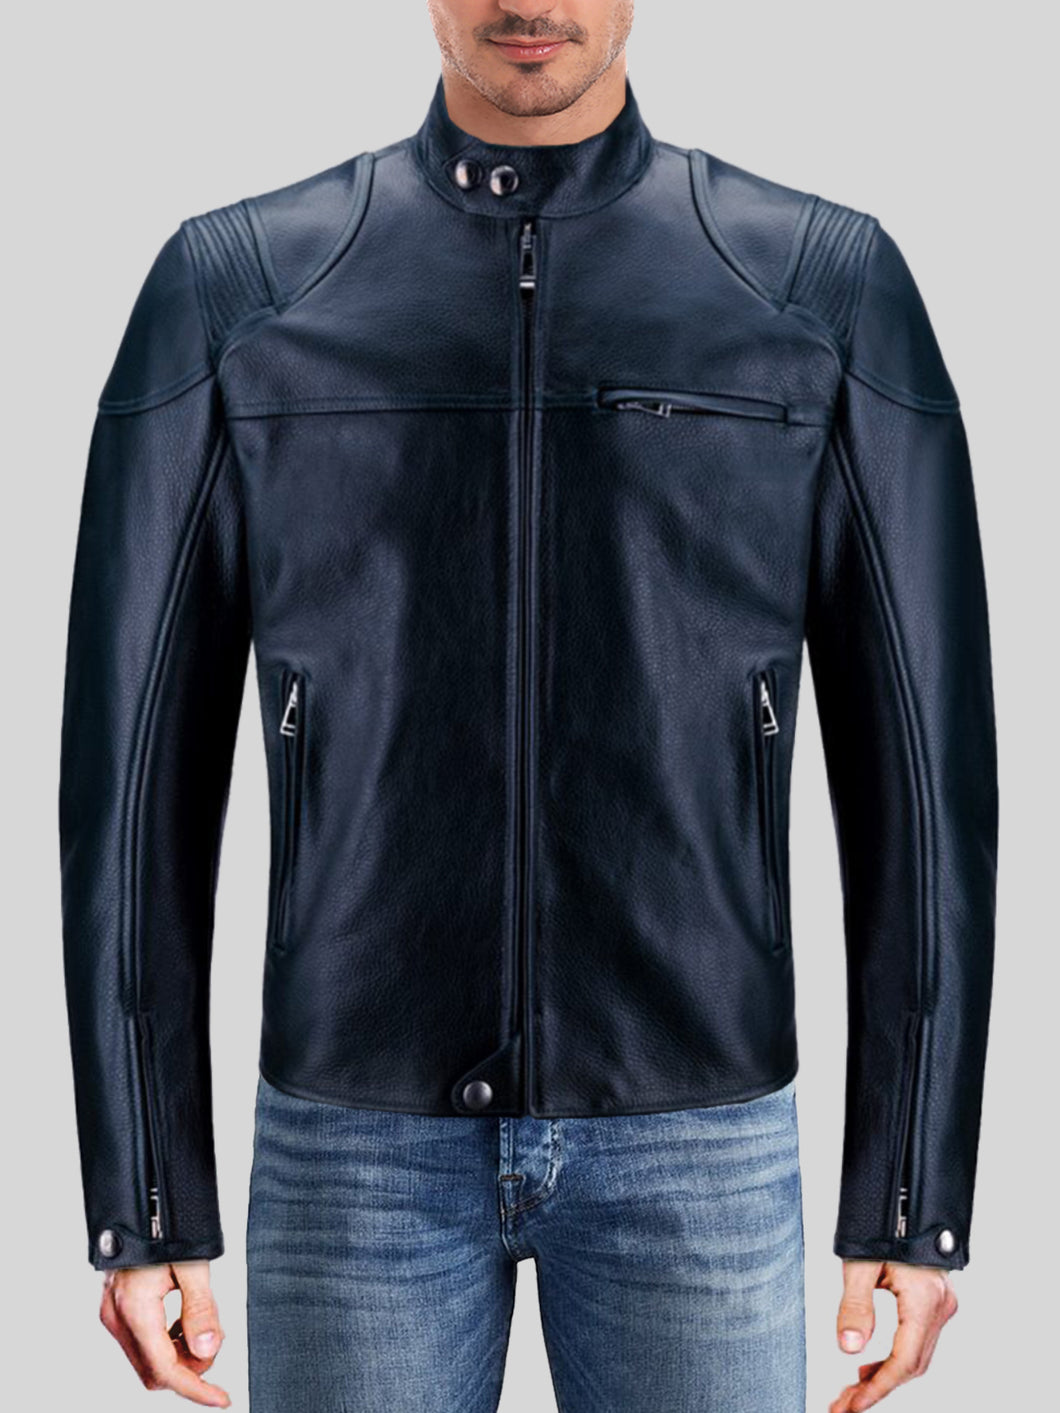 Men's Stylish Black Motorcycle Leather Jacket